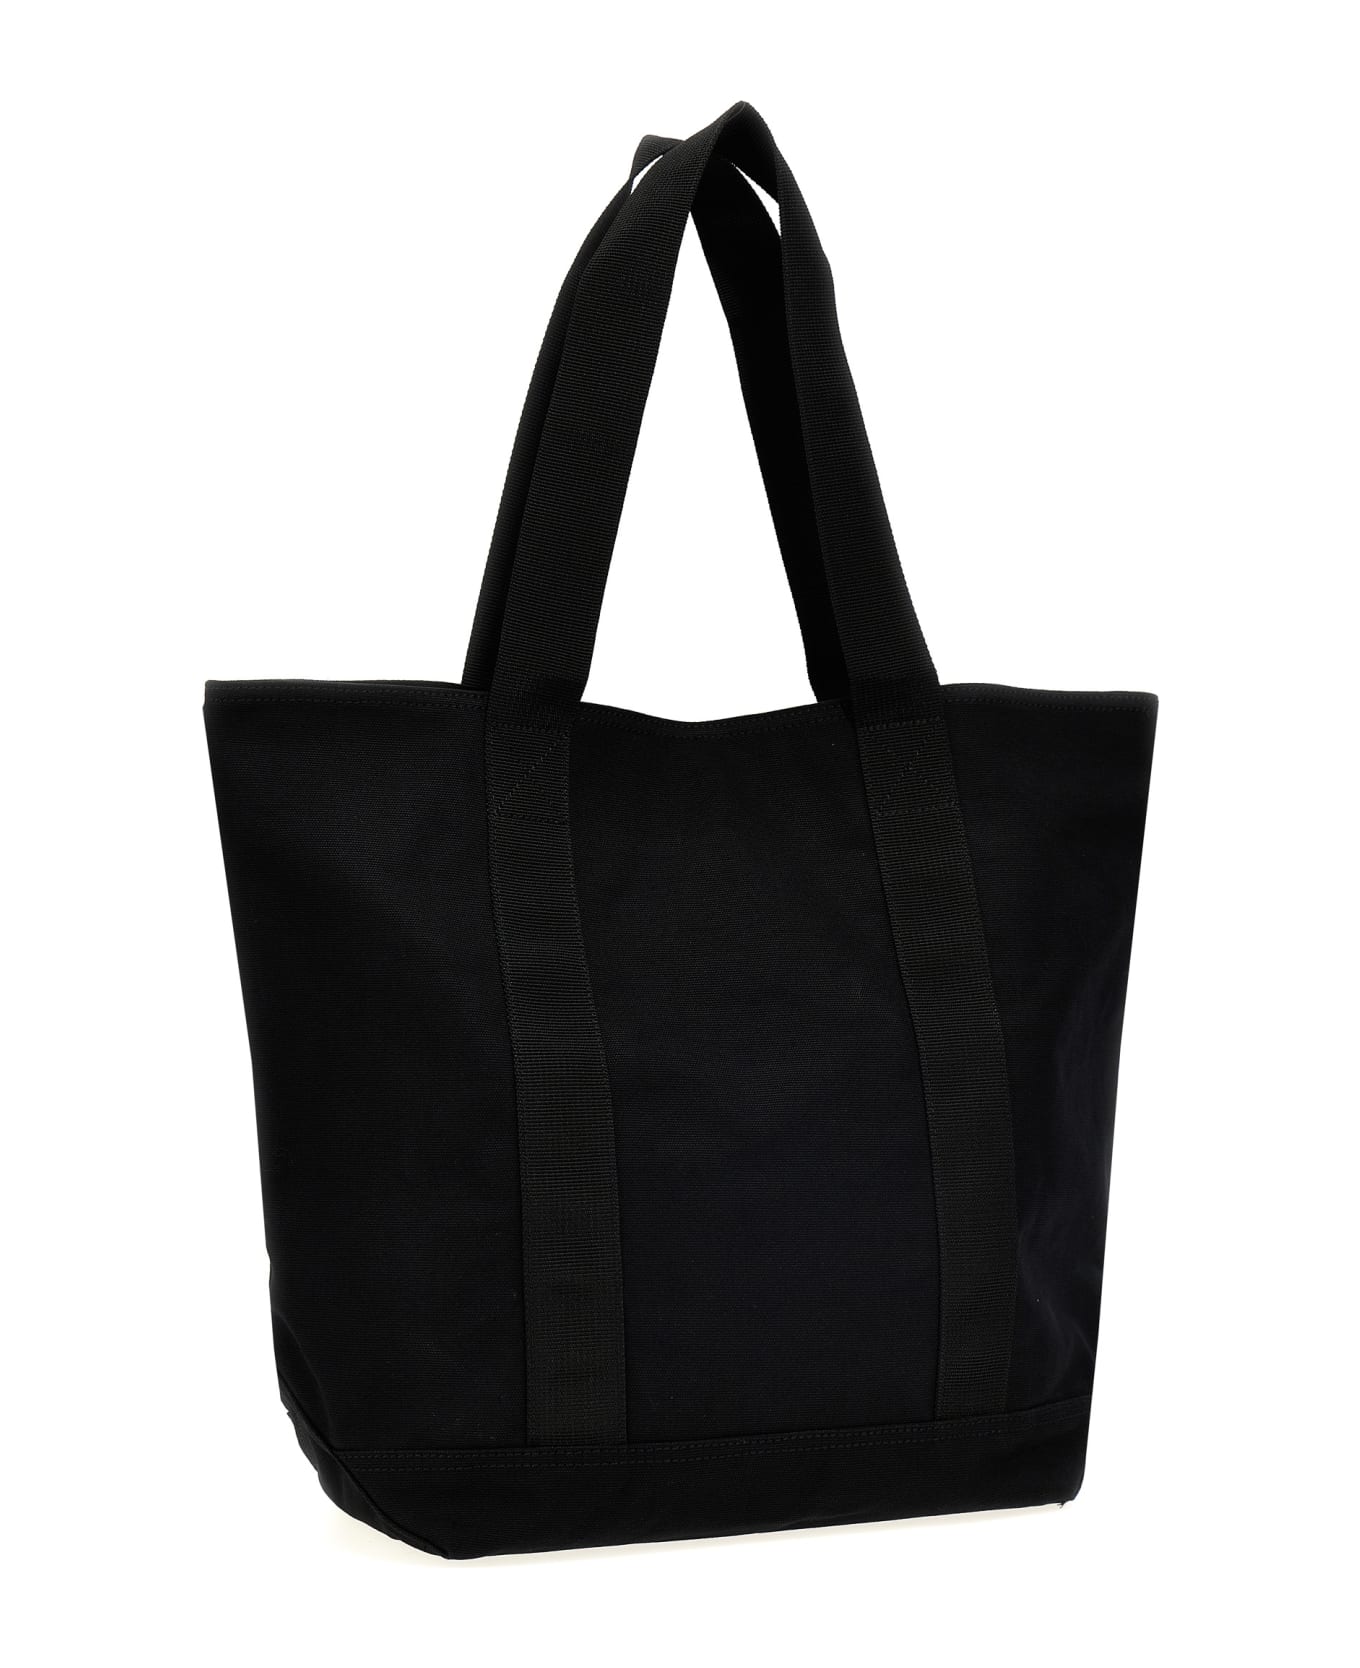 Carhartt Canvas Shopping Bag - Black